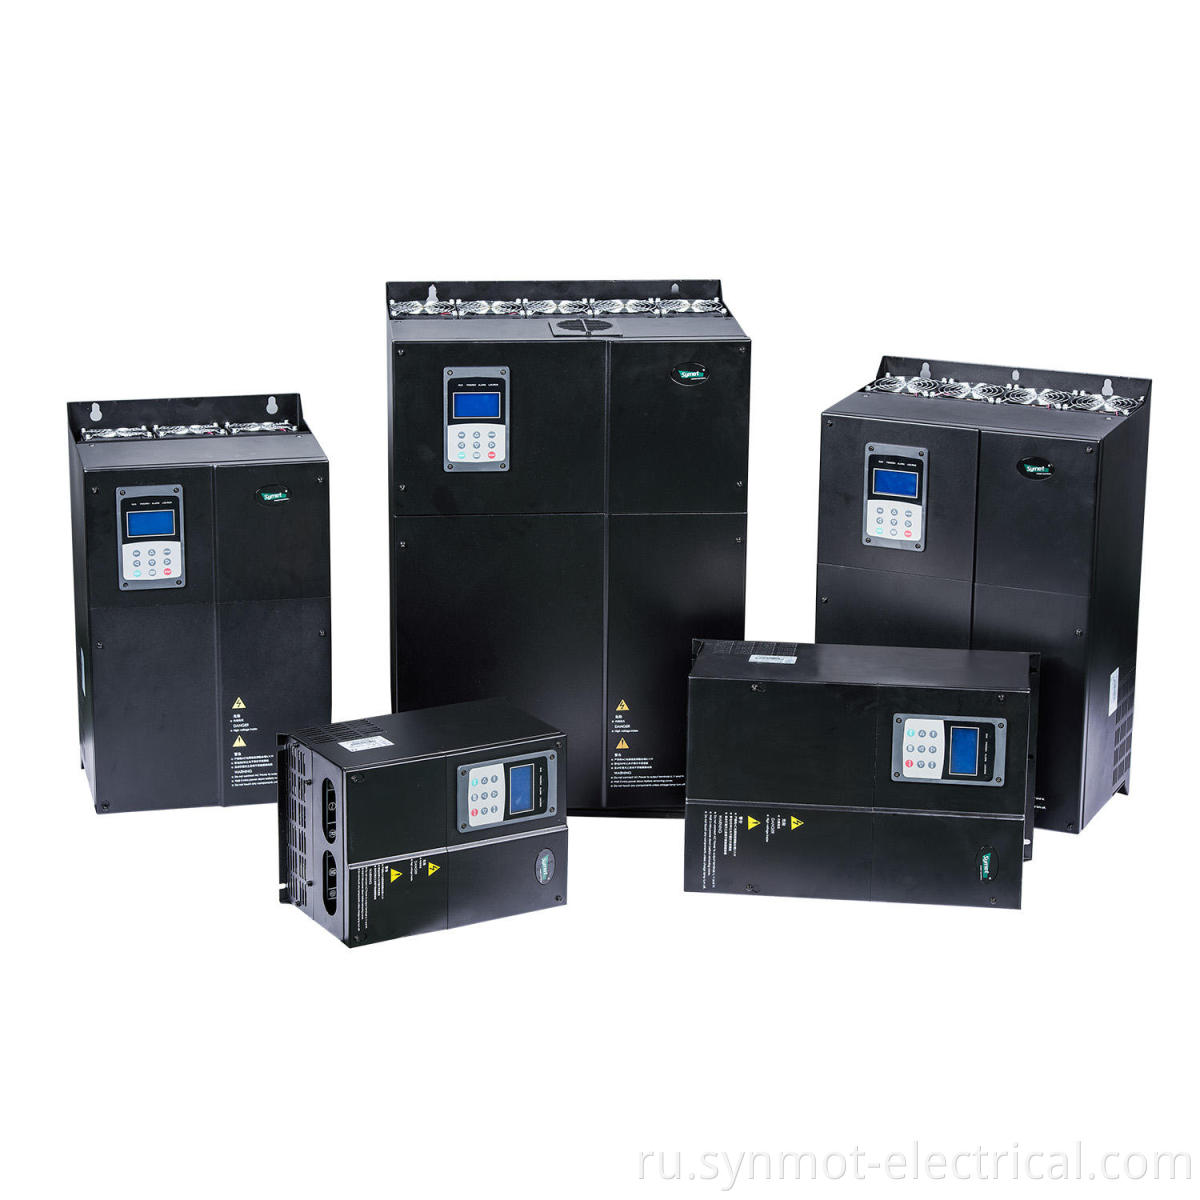 Synmot 11KW Универсальные сервоприводы SM22-11DC и 3-фазного робота AC Print Print Price